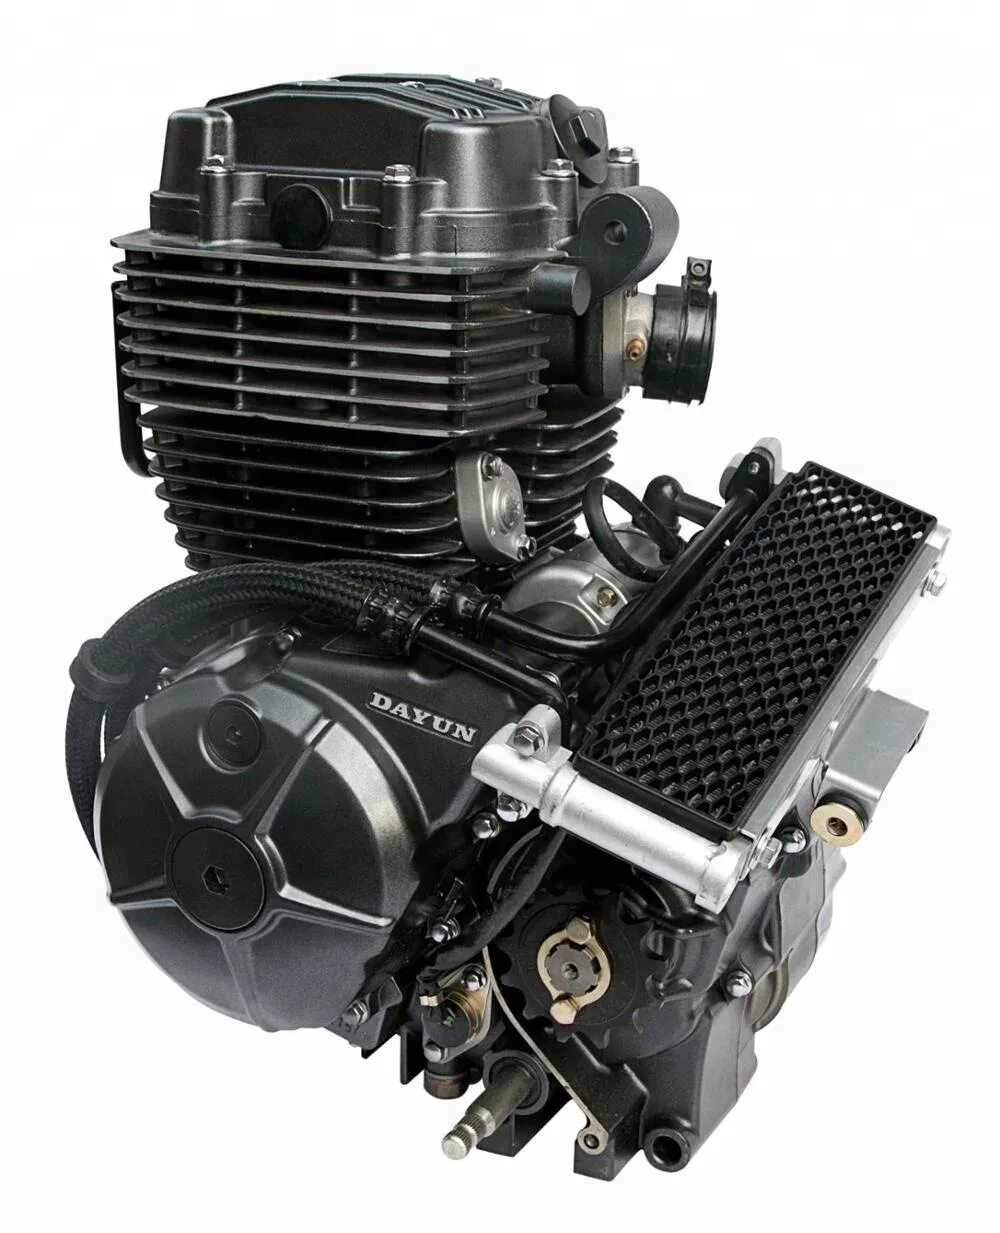 Двигатель Zongshen 200cc. Зонгшен 200 кубов мотор. Зонгшен 150 кубов мотор. Двигатель 165fml 200 cc. 250 кубов 4 тактный